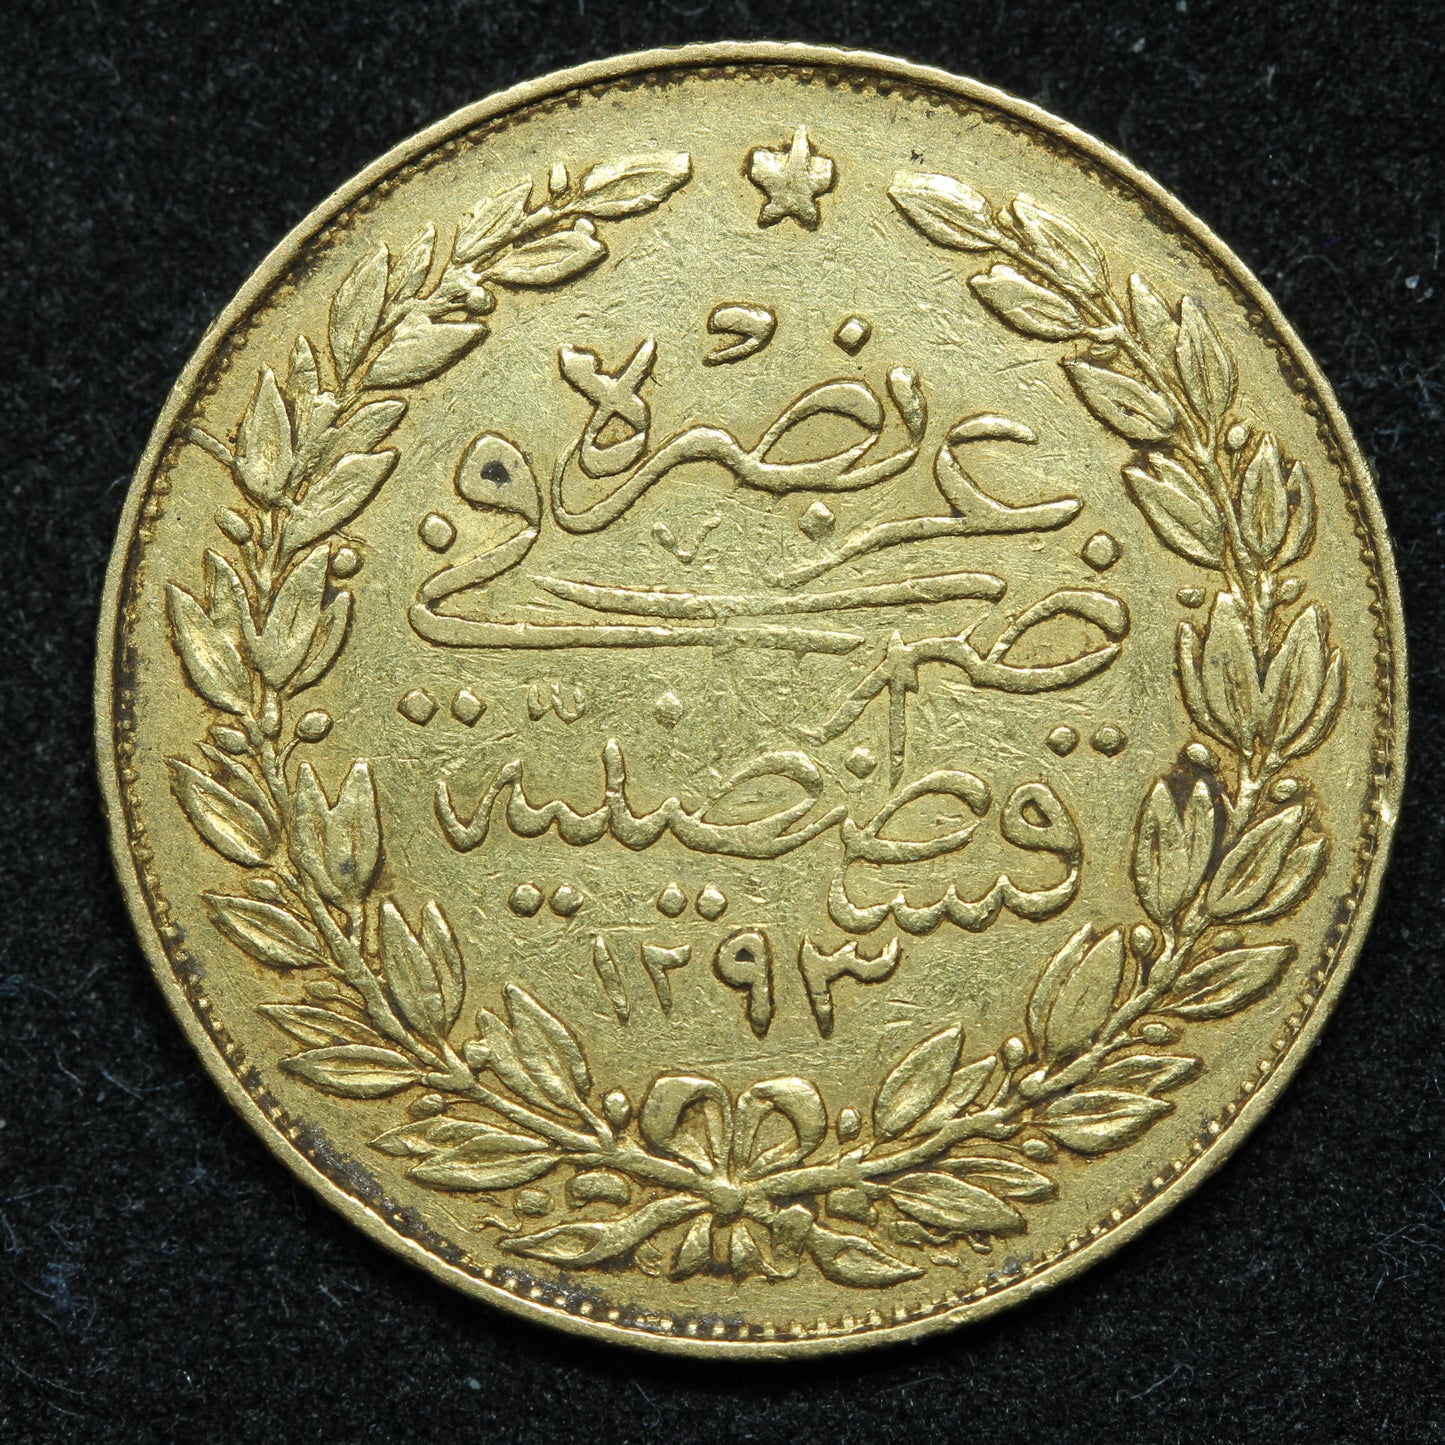 Turkey 100 Kurush 1293/7 AH (1876) Gold Coin